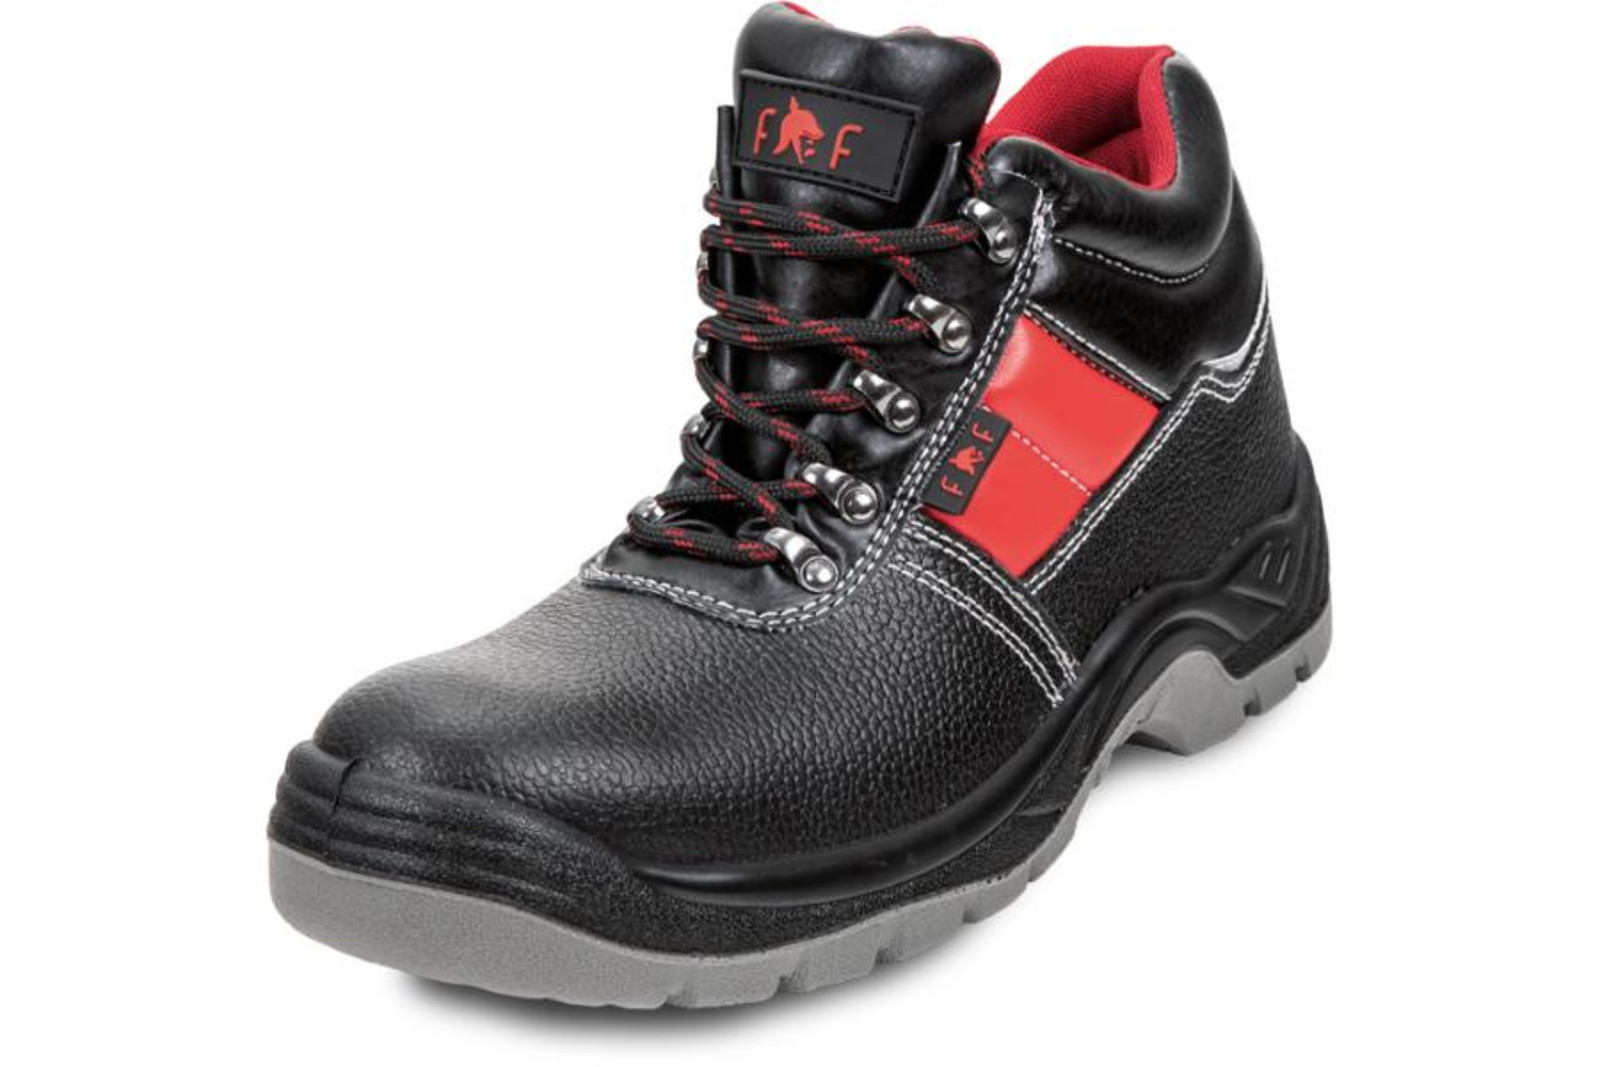 Bezpečnostná obuv SC 03-003 S3 - veľkosť: 45, farba: čierna